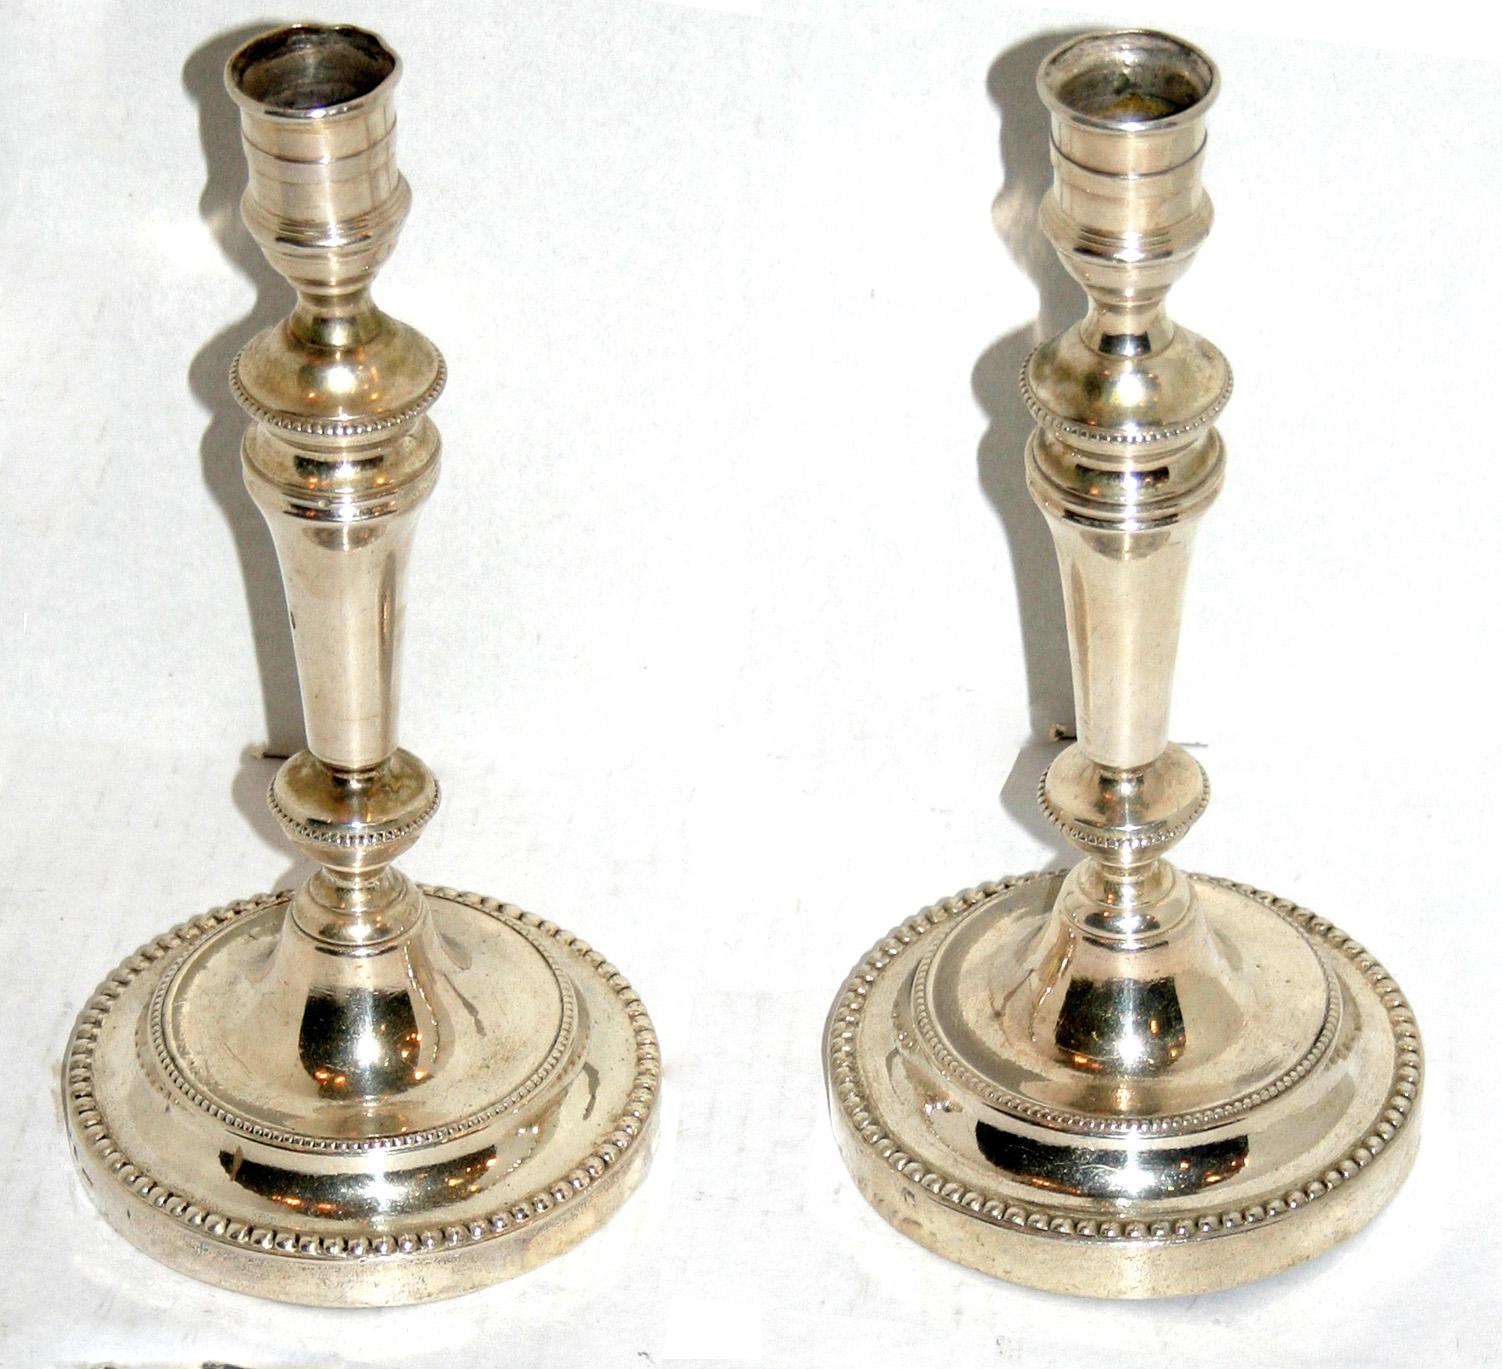 Paire de chandeliers anglais en métal argenté des années 1930, avec finition d'origine.

Mesures :
Hauteur : 9.5